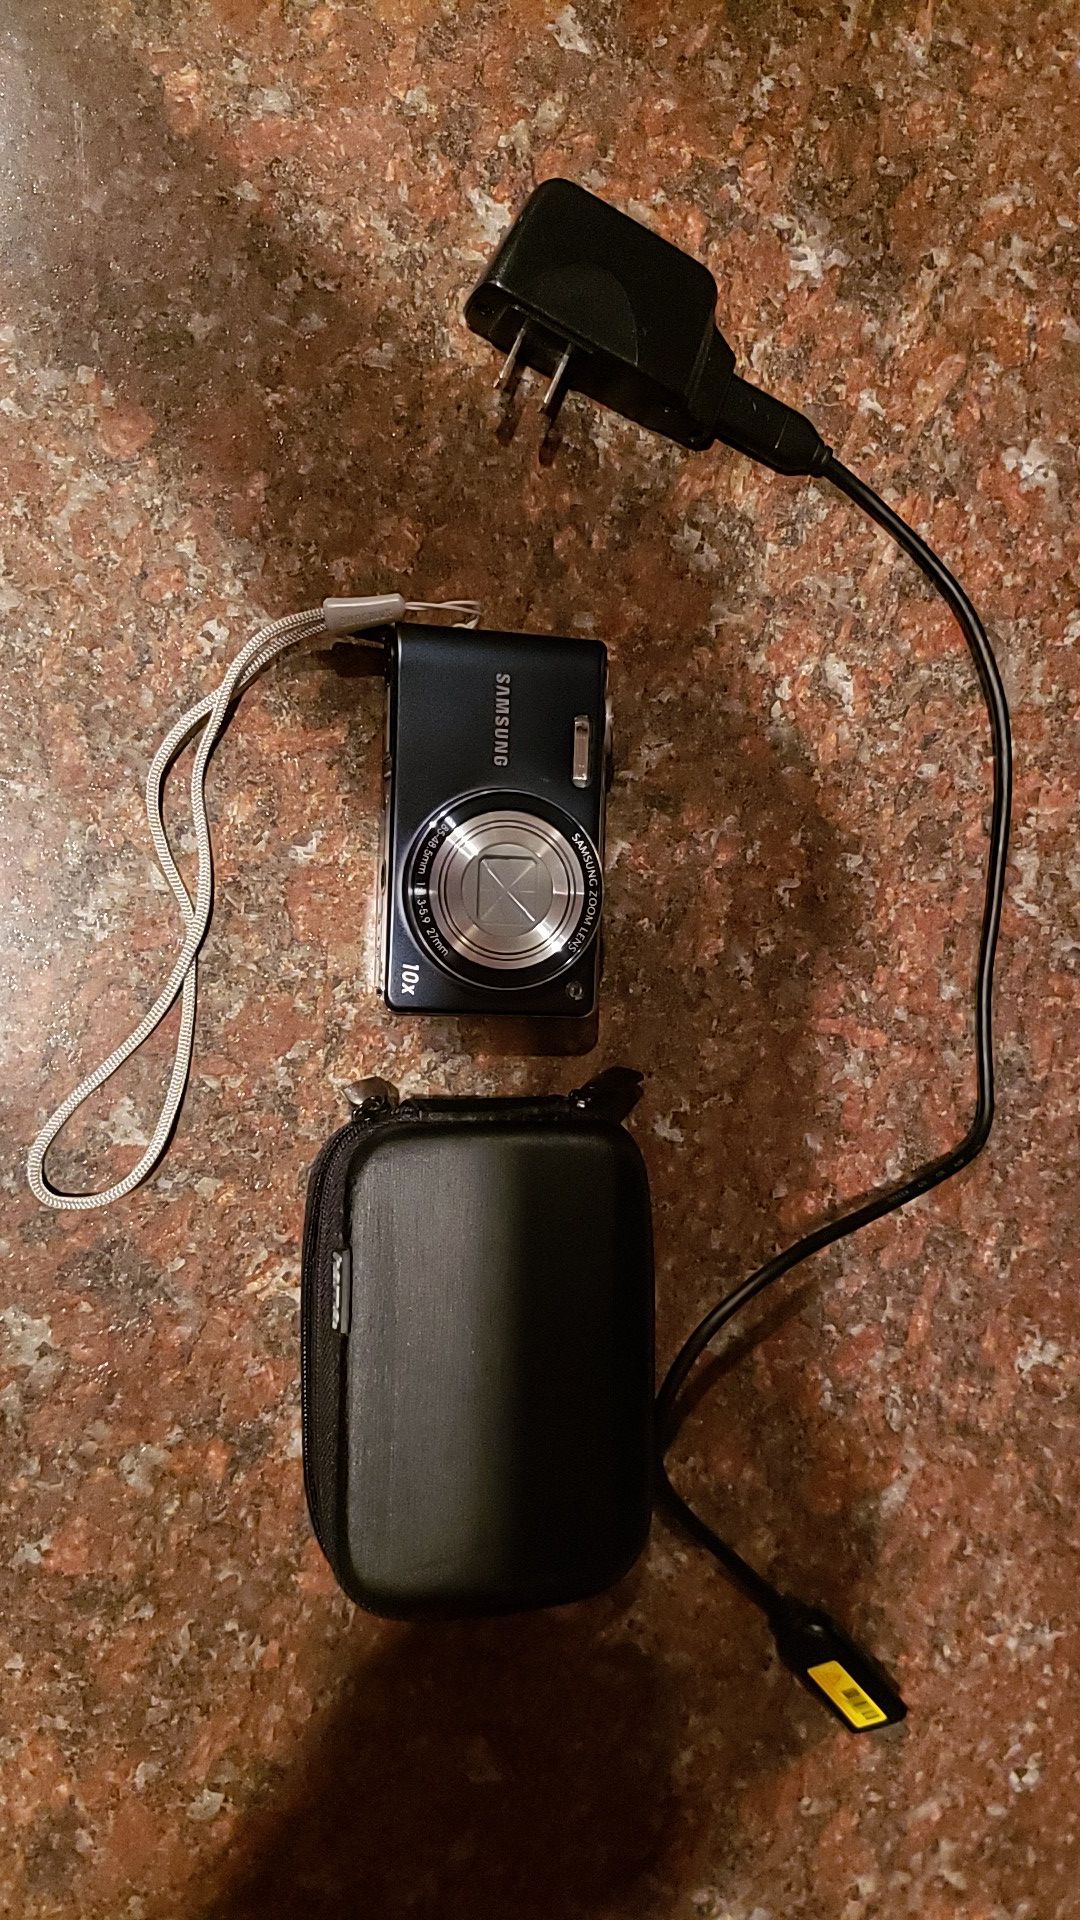 Samsung PL210 digital camera